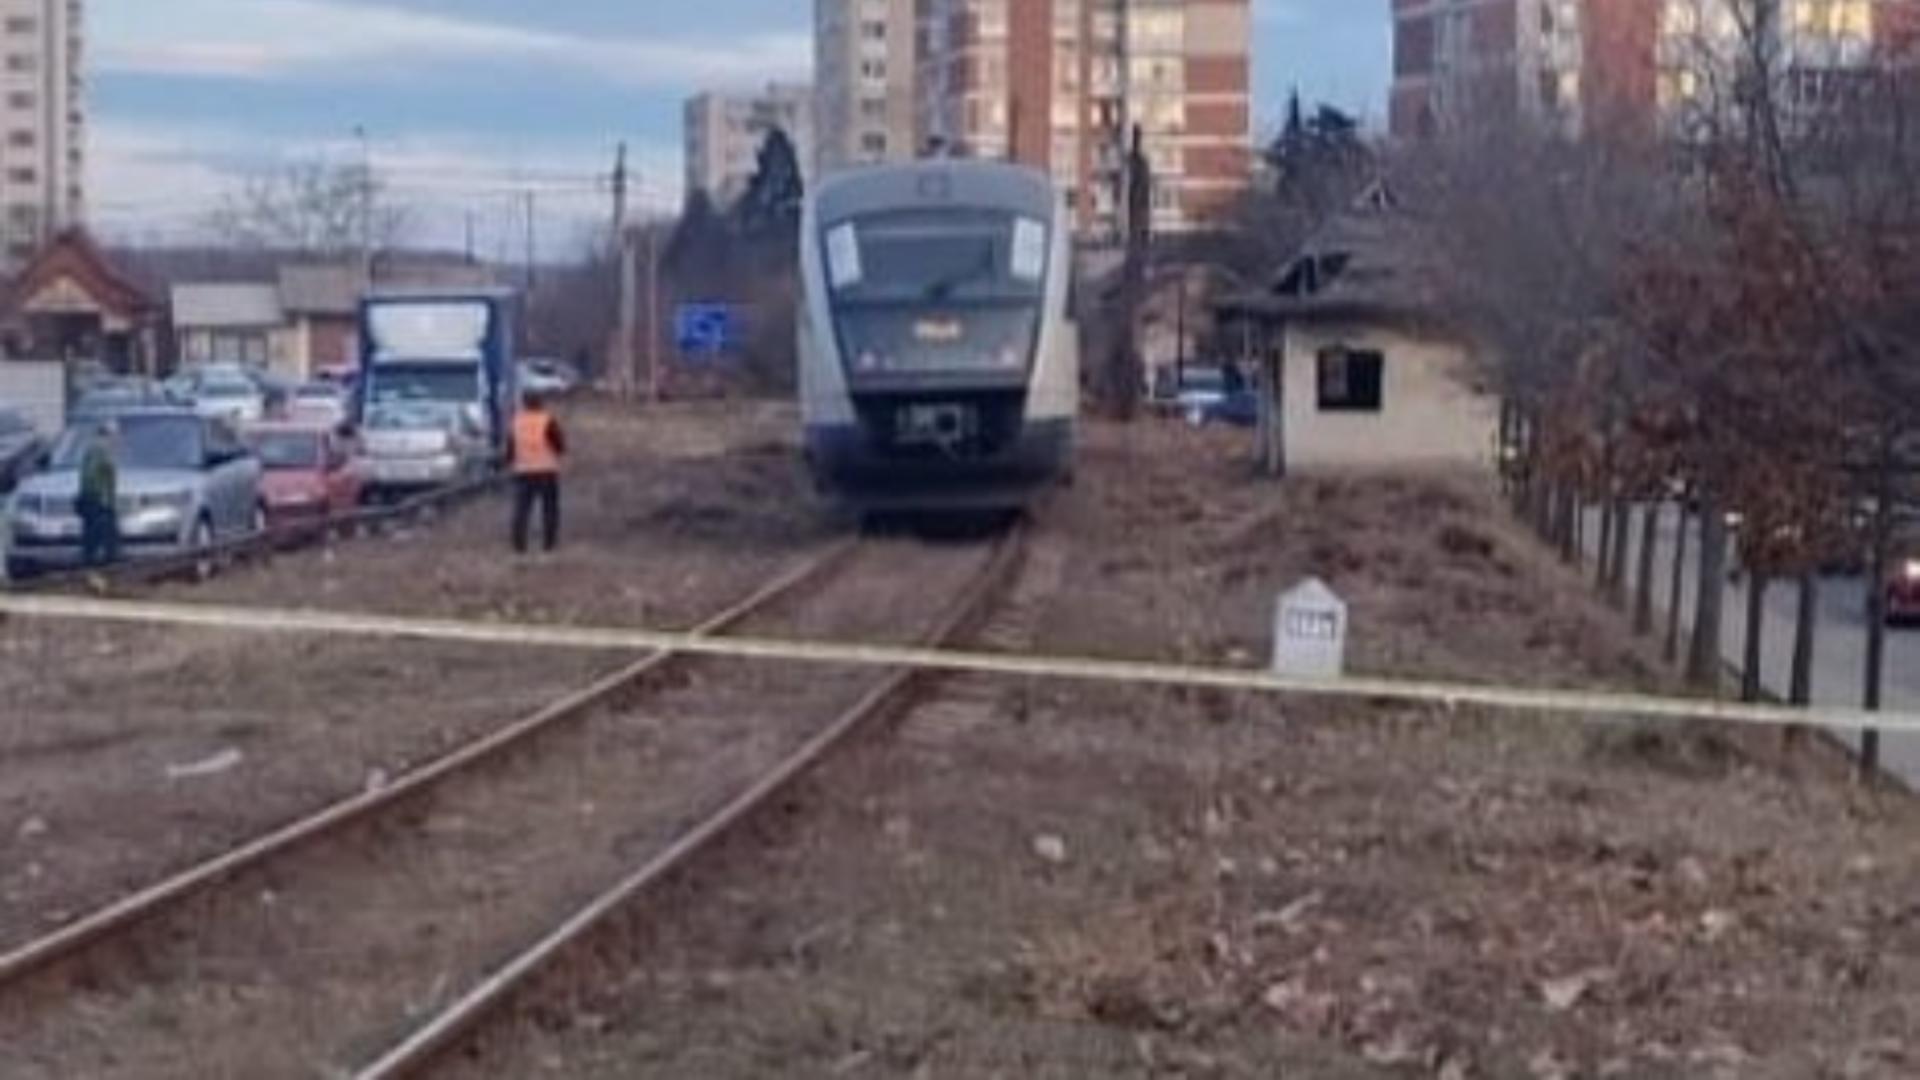 Sinucidere sau accident? Un bărbat de 45 de ani, din Pitești, a murit călcat de tren. Mecanicul de locomotivă spune că s-a aruncat în fața trenului VIDEO